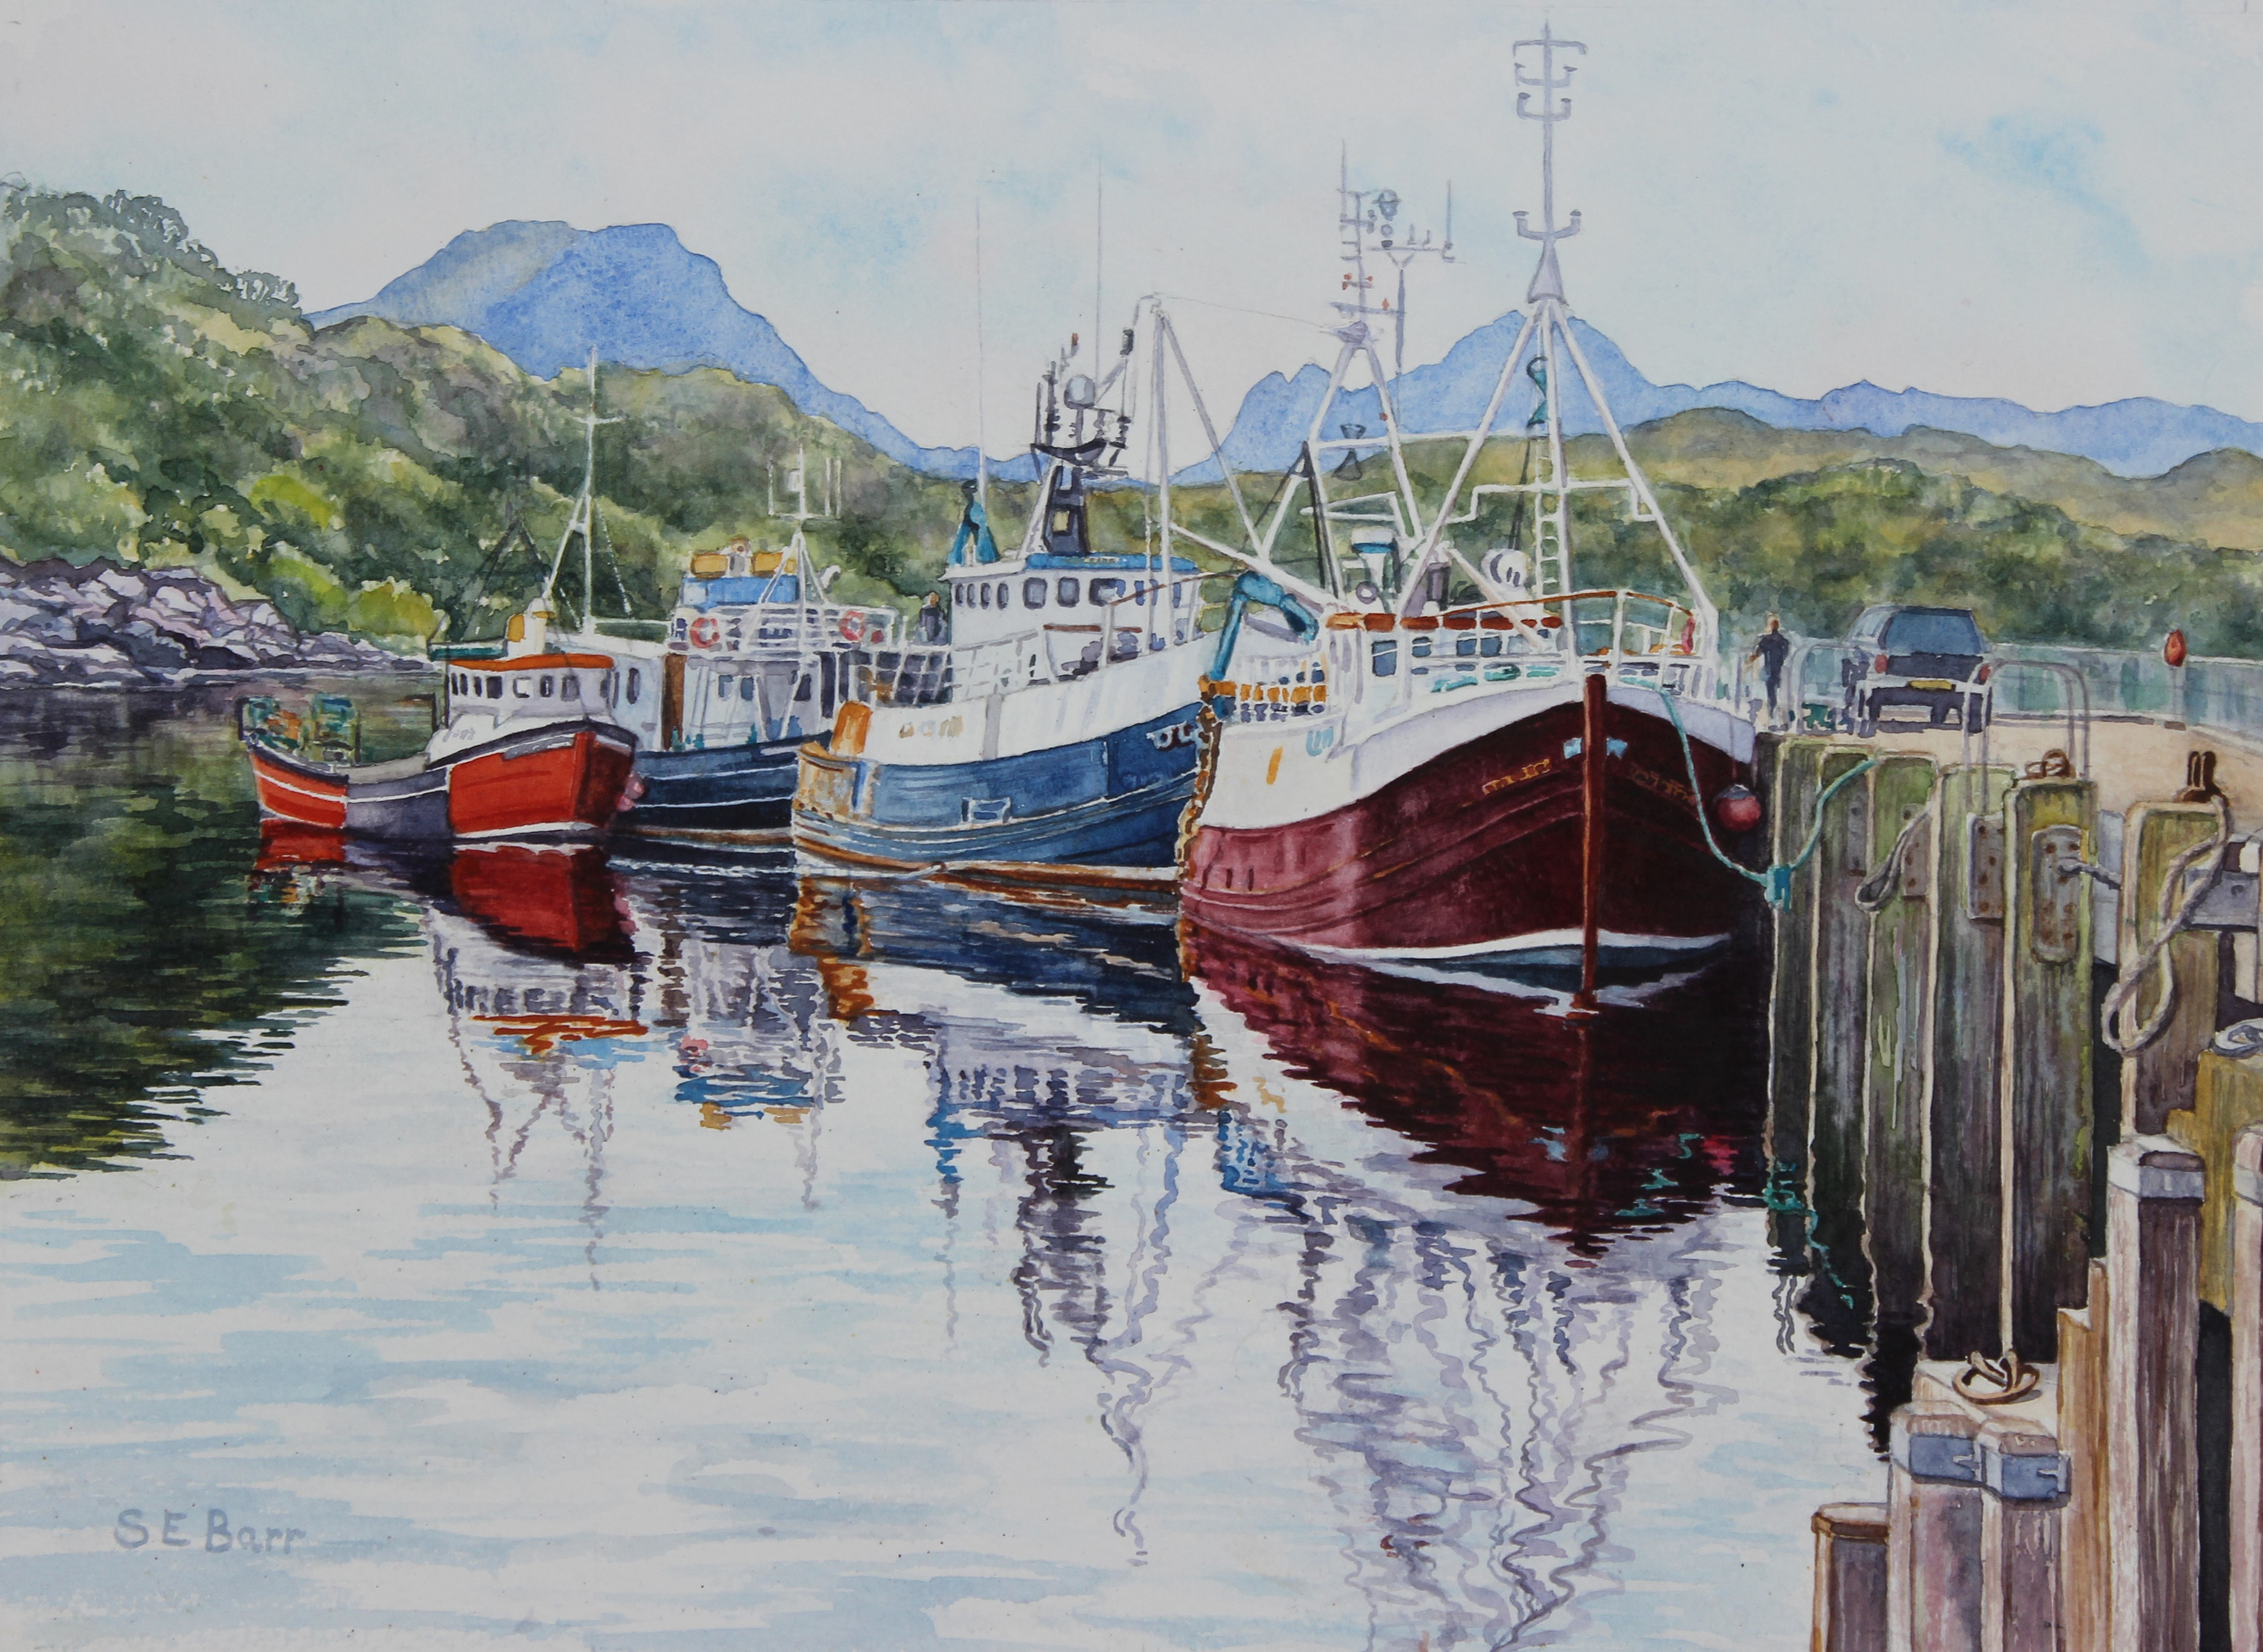 Still Waters, Gairloch 
watercolour
Framed size: 43x52cm
£230